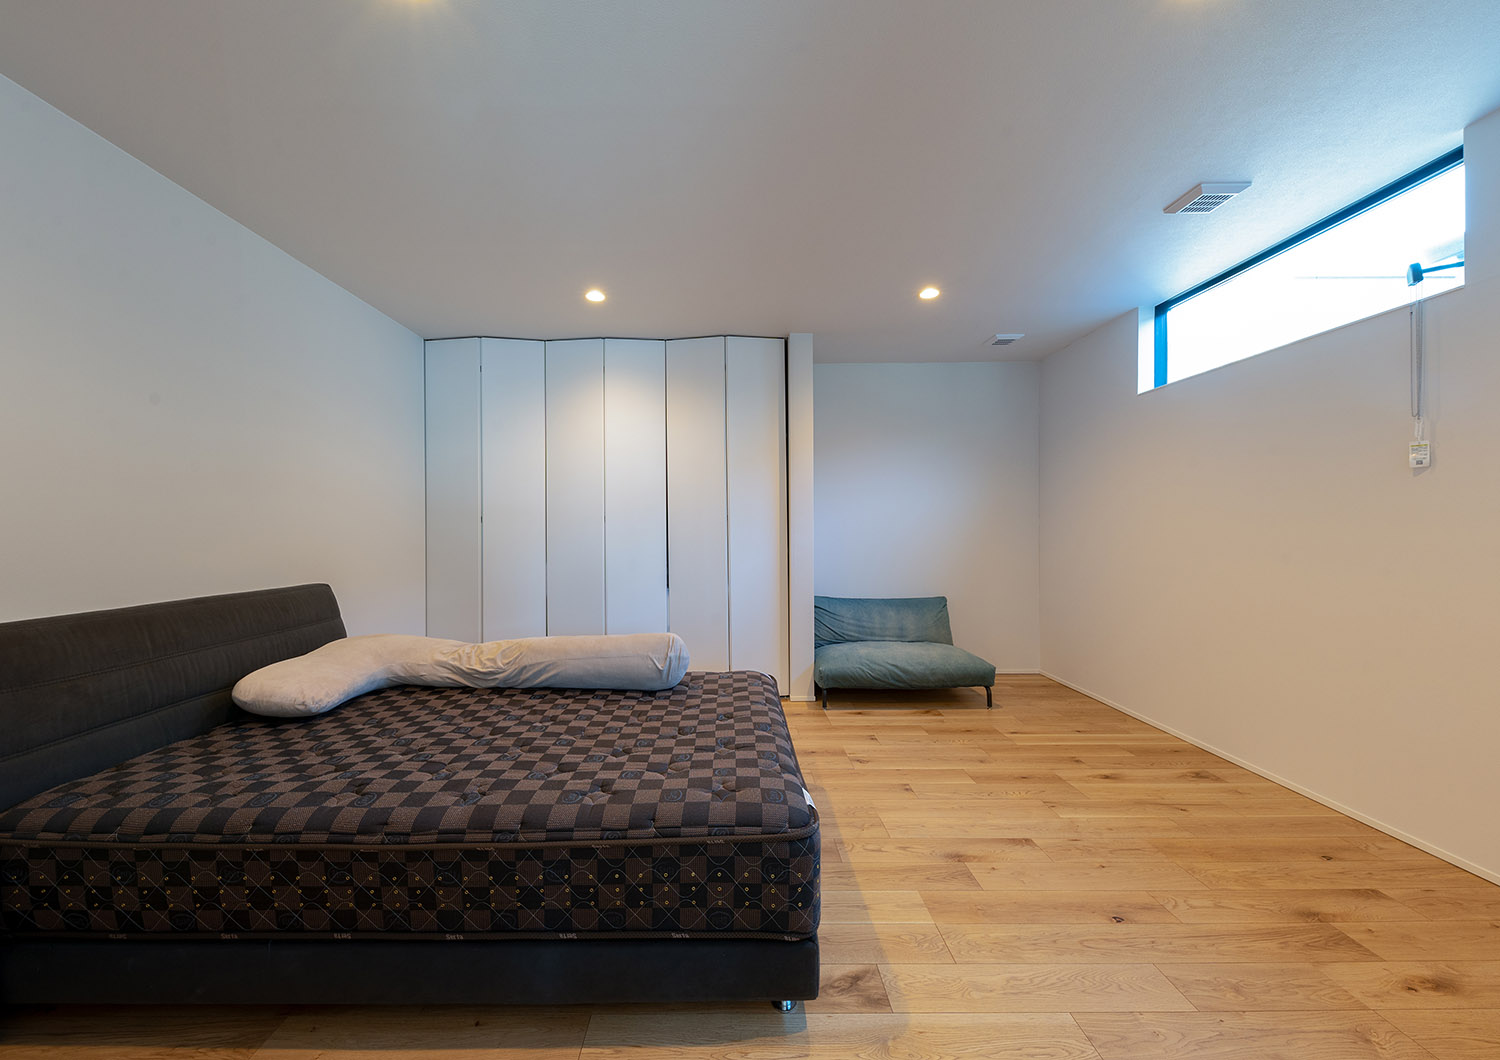 天井近くにスリット窓を取り付けたプライバシーが確保されたシンプルな寝室・デザイン住宅